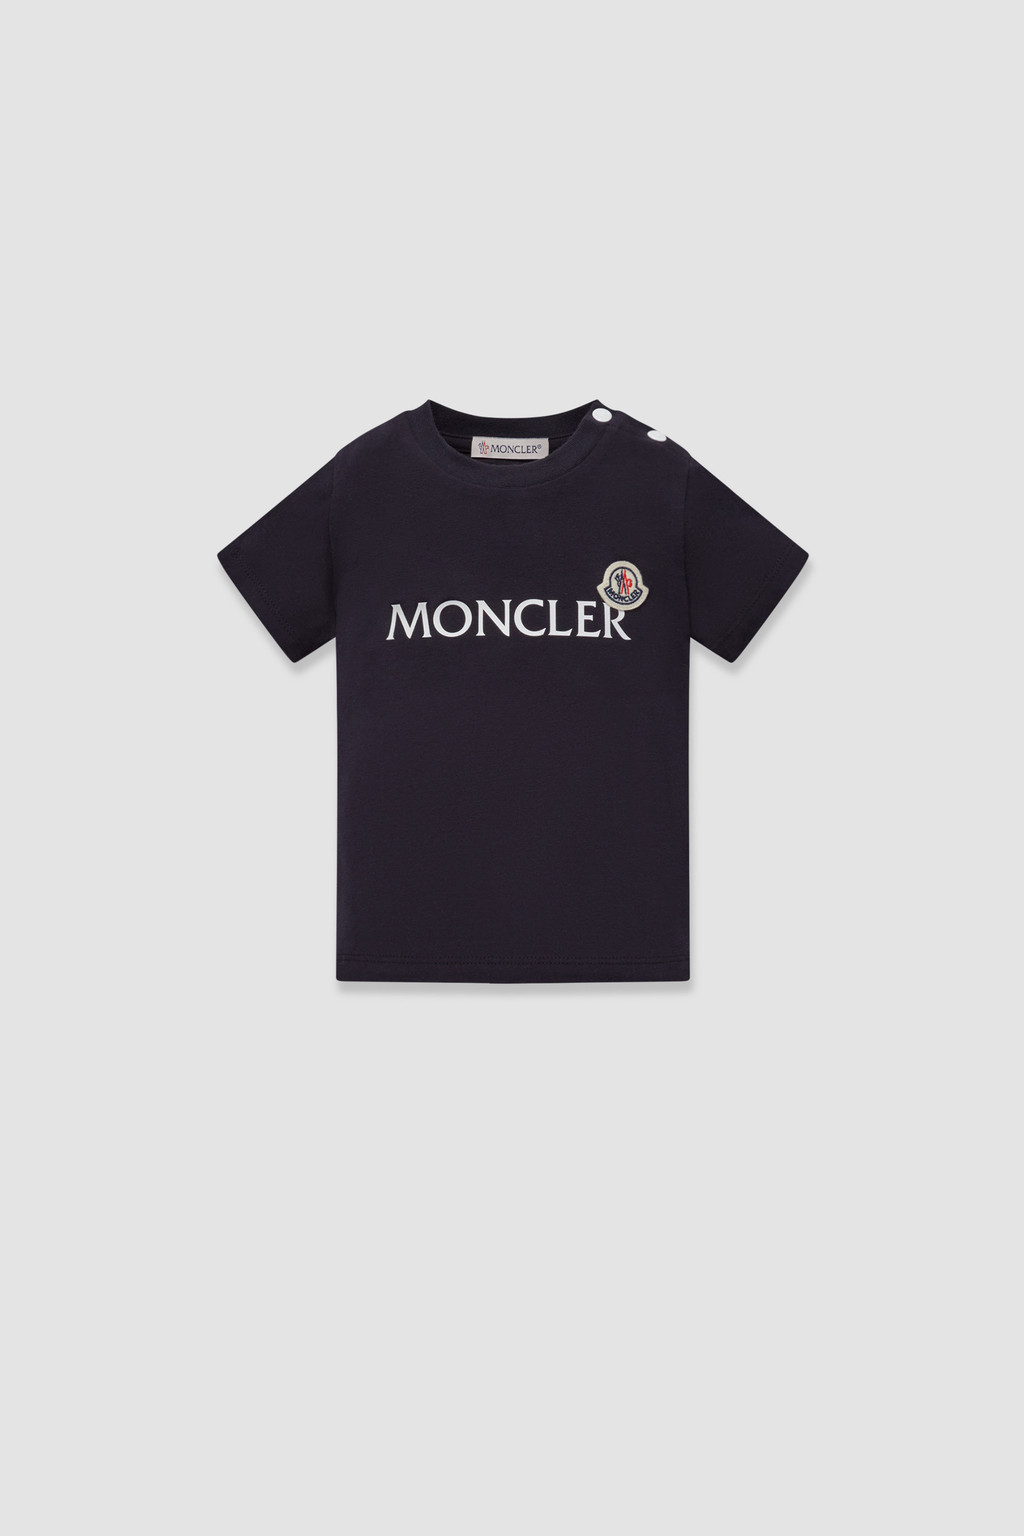 モンクレール MONCLER ベビー−Ｔシャツ ブランド 12-18ヶ月 2才 3才相当 8C00002 SS T-SHIRT 8790M 455  レッド系 kb-01 毎日続々入荷 - トップス